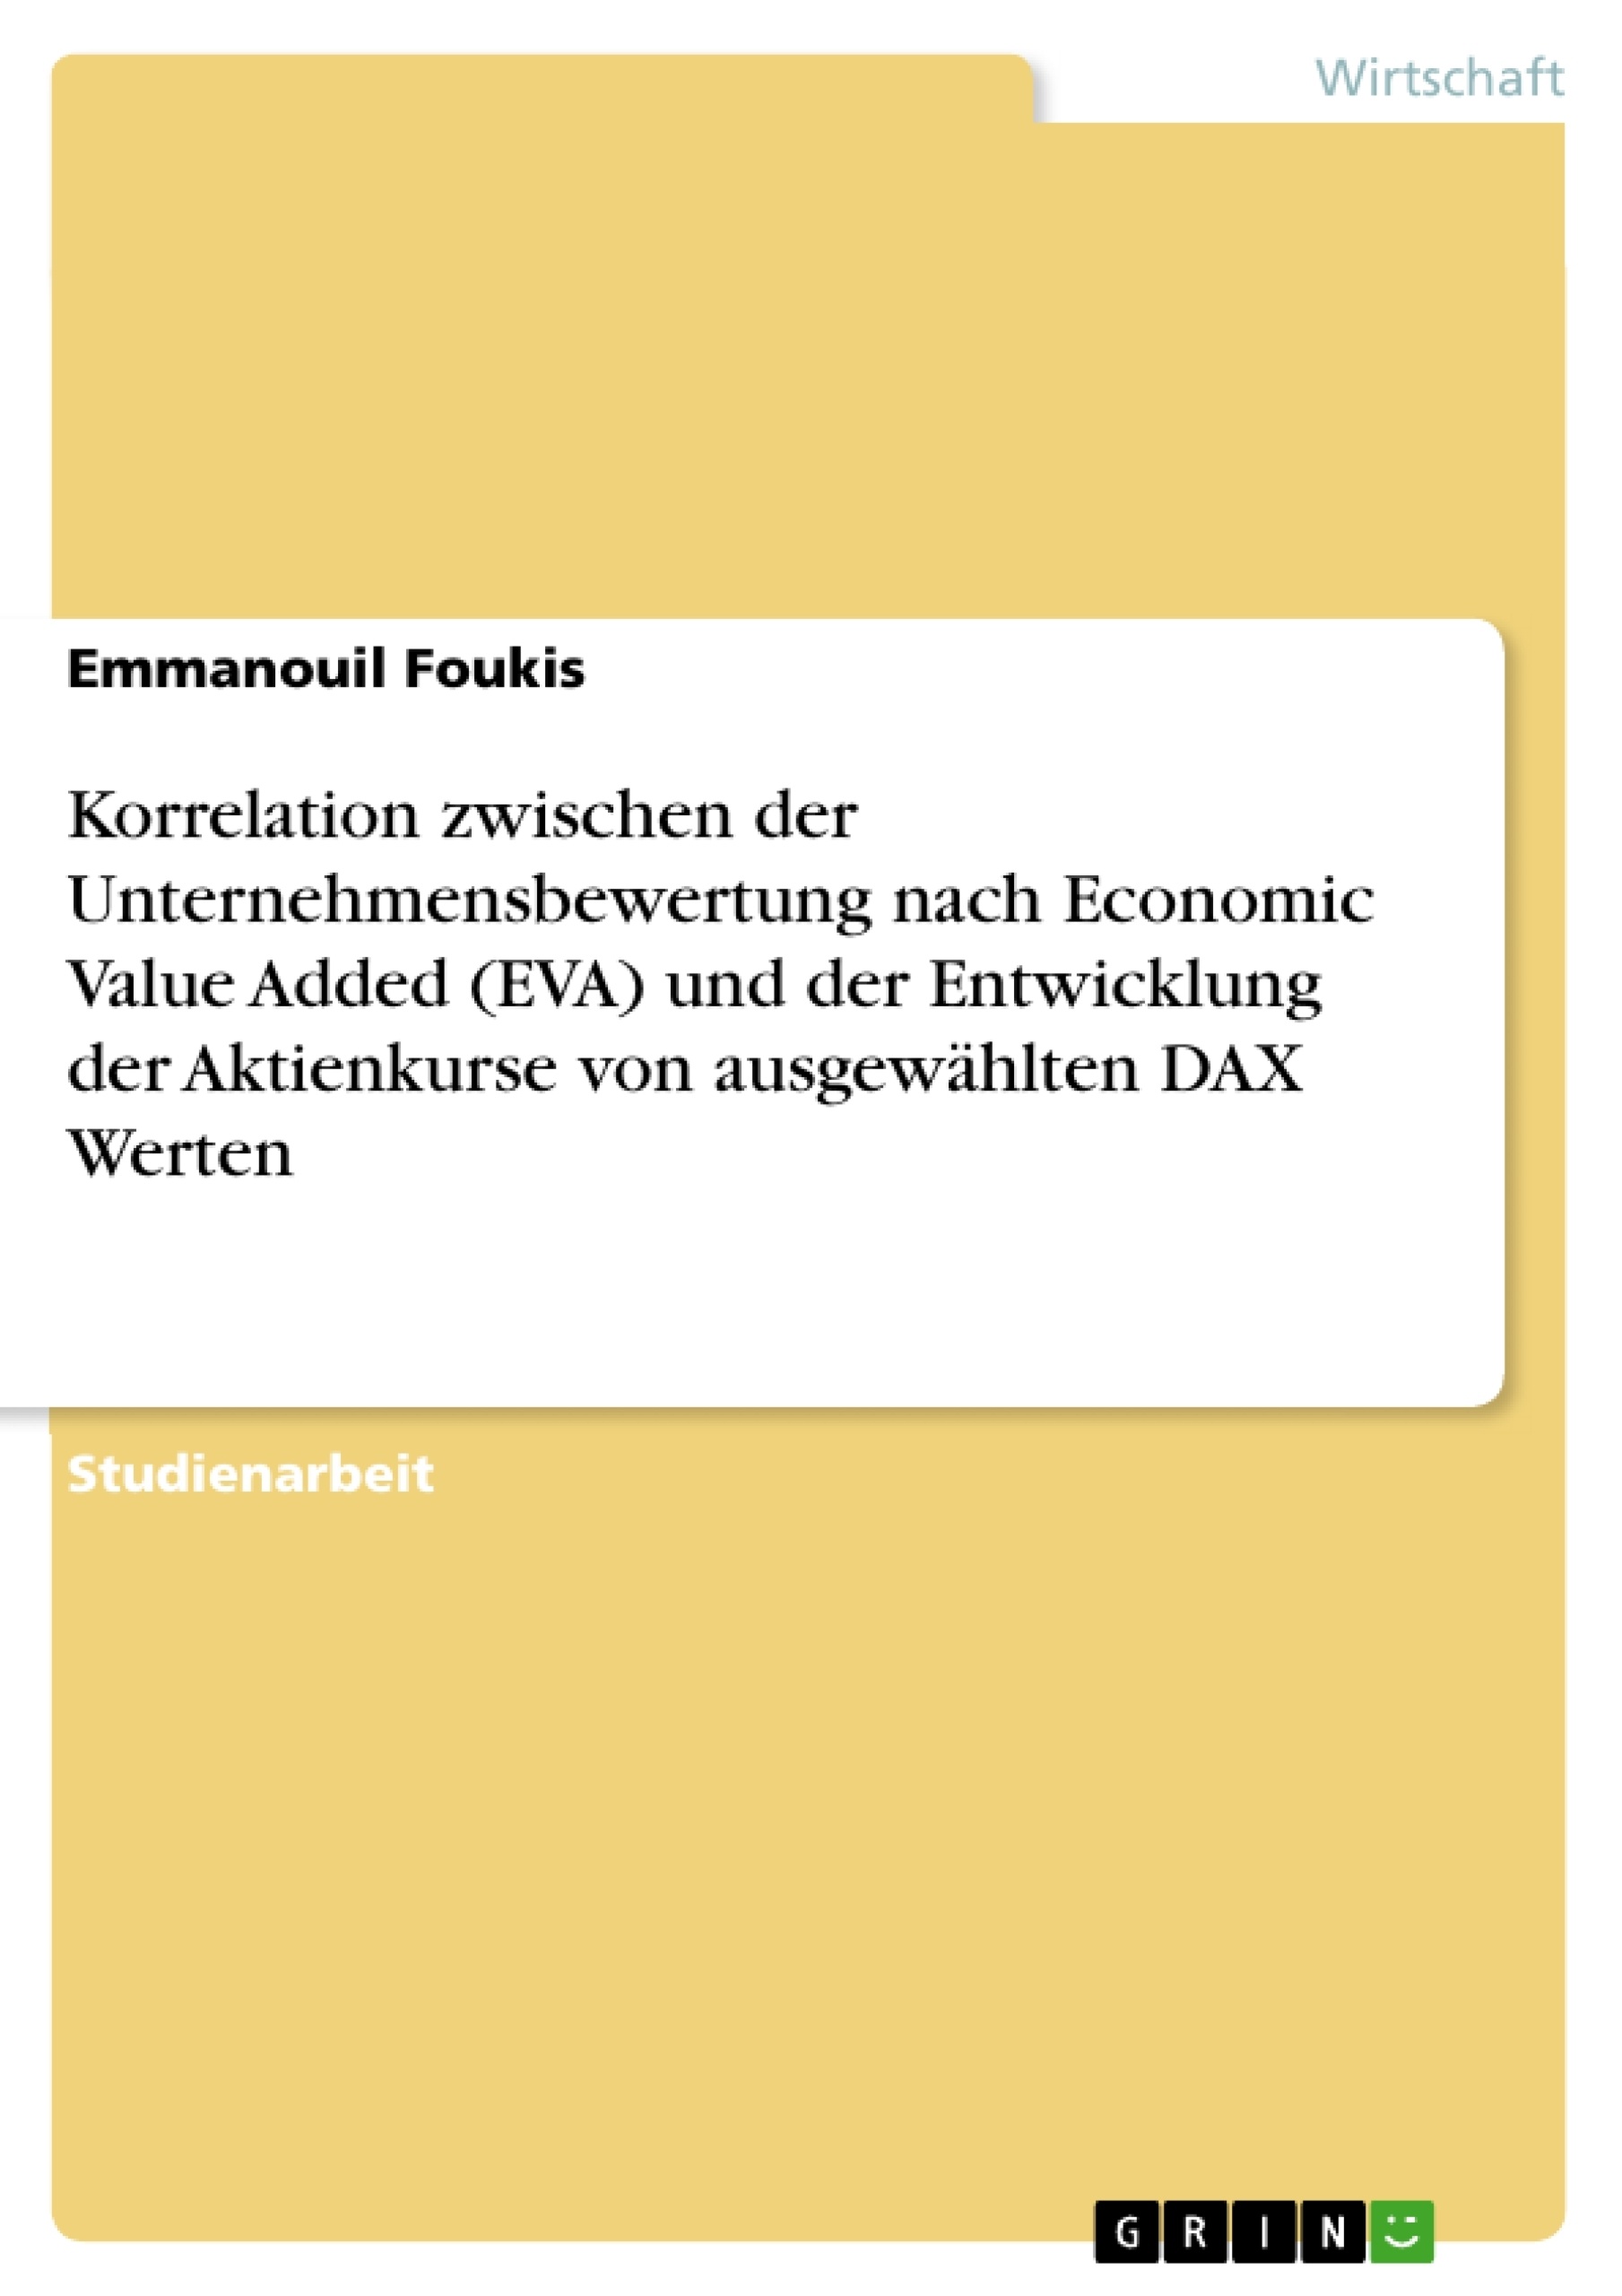 Title: Korrelation zwischen der Unternehmensbewertung nach Economic Value Added (EVA) und der Entwicklung der Aktienkurse von ausgewählten DAX Werten